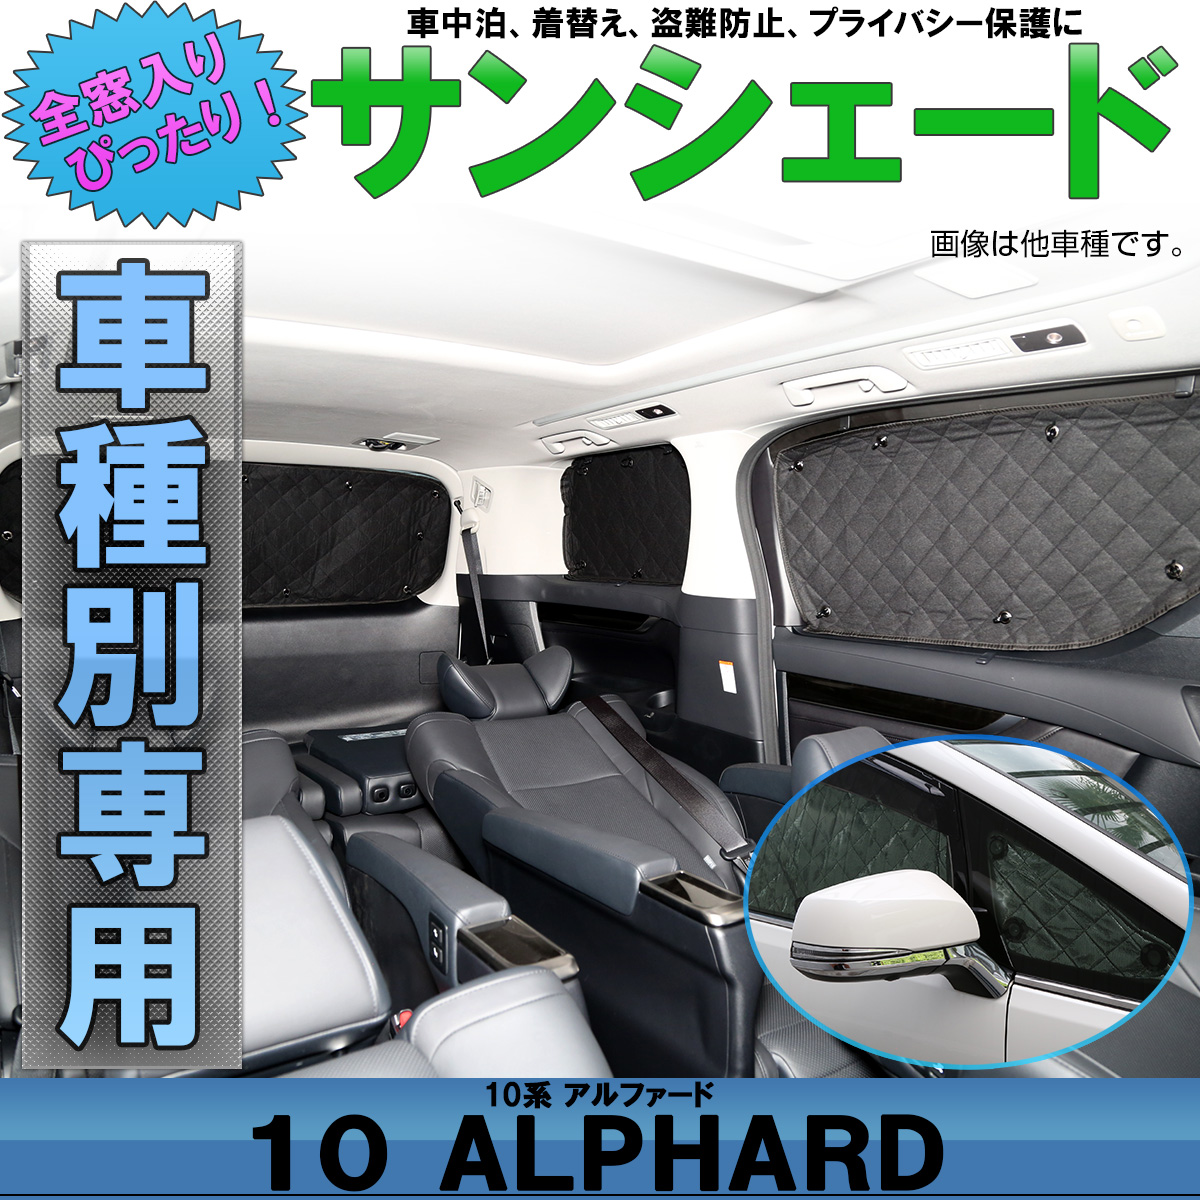 新型 アクア MXPK10 11 15 16型 カーテン サンシェード 車中泊 グッズ プライバシーサンシェード リア用『01s-a064- - 8